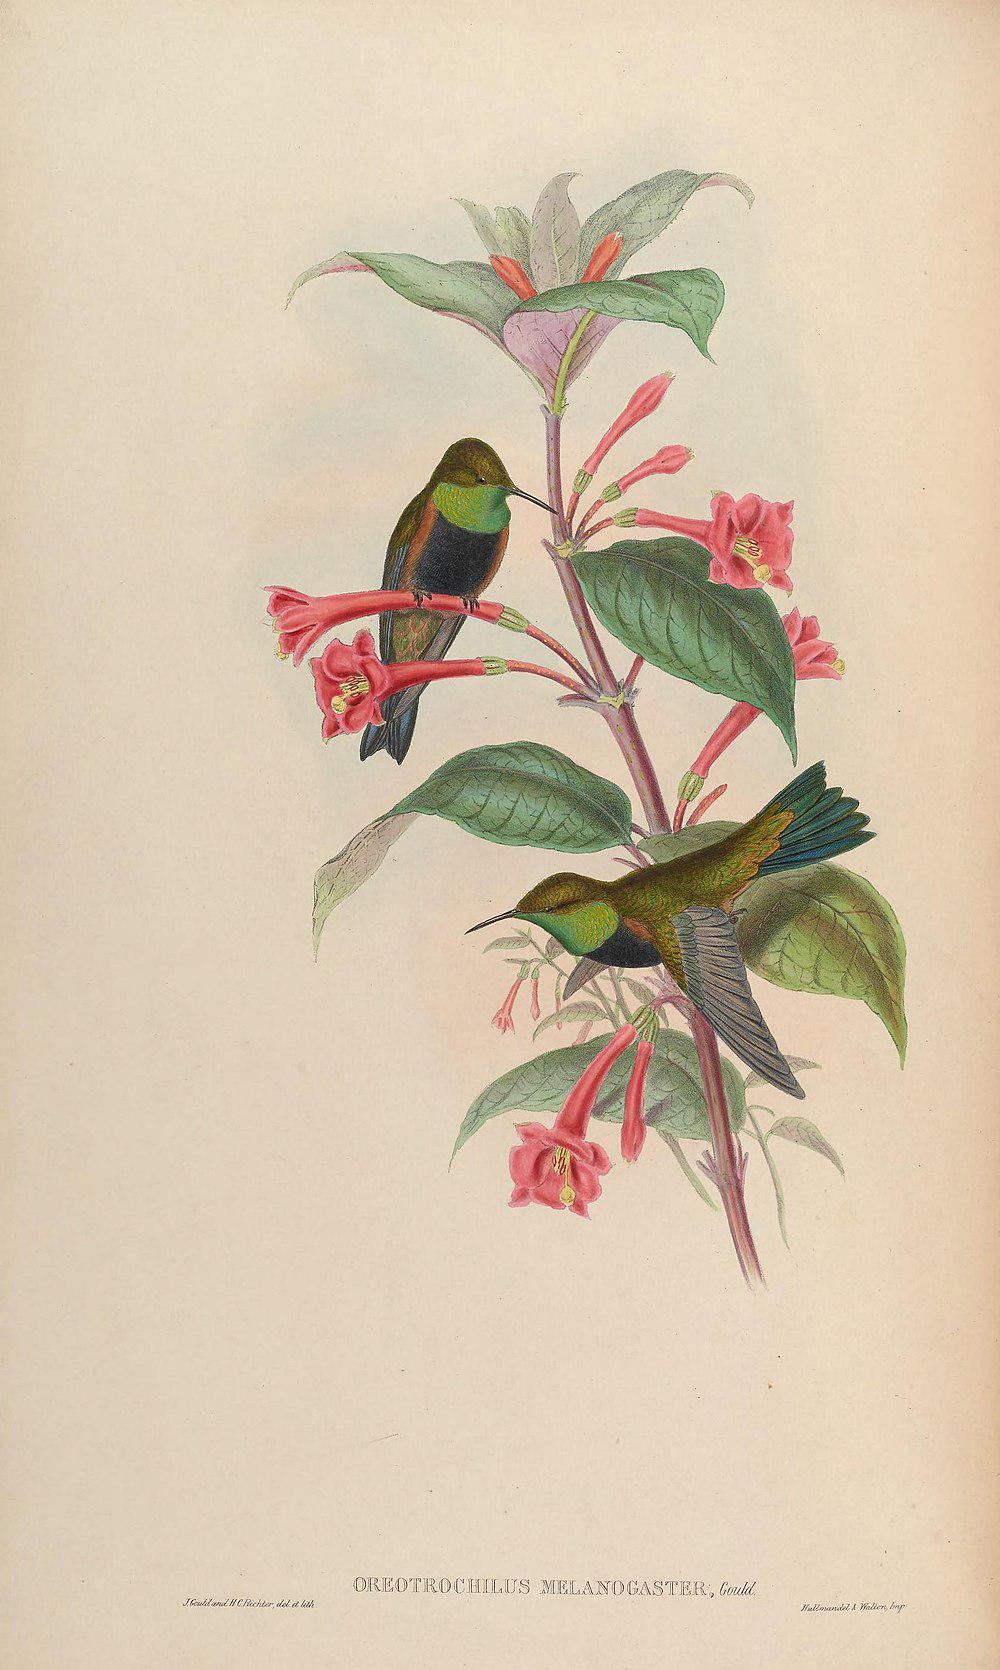 黑胸山蜂鸟 / Black-breasted Hillstar / Oreotrochilus melanogaster